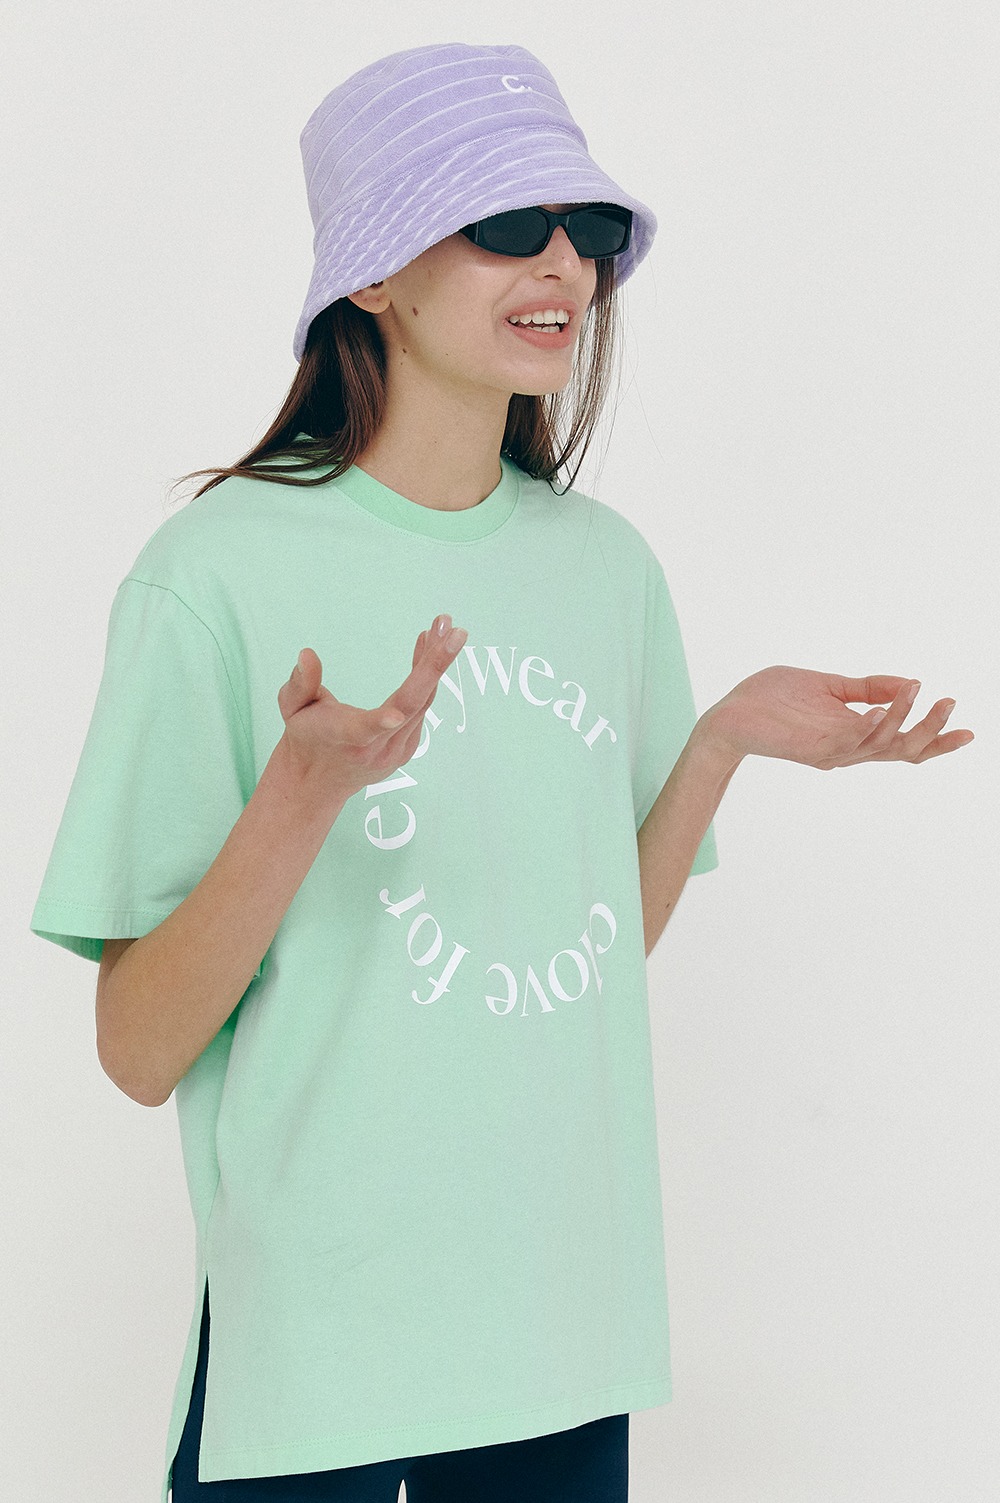 clove - [SS21 clove] Everywear T-Shirt Mint